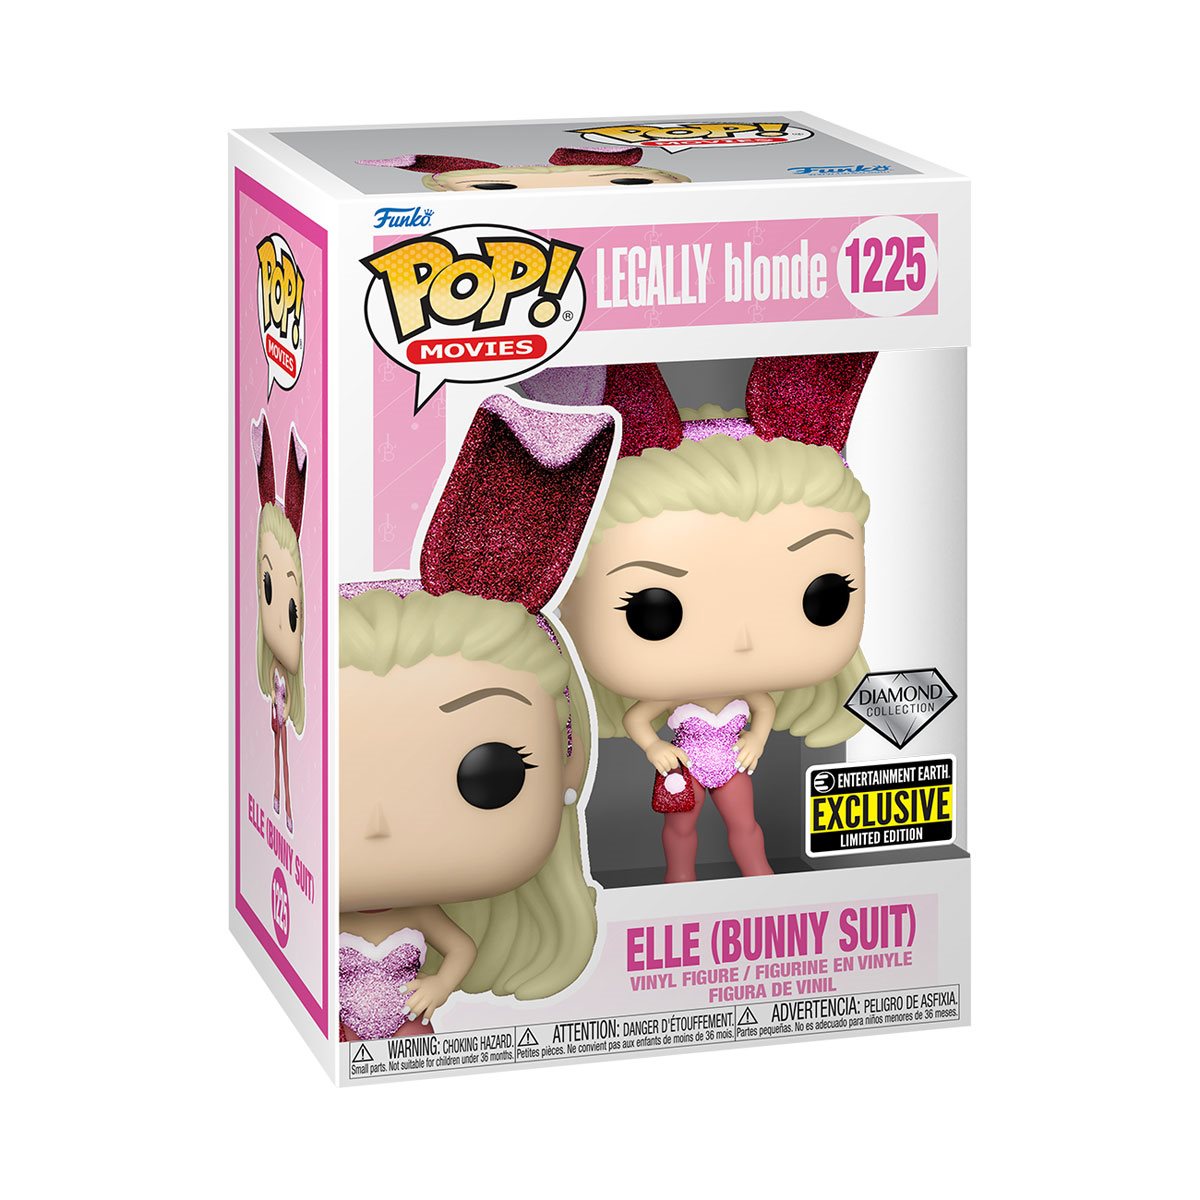 Elle Bunny Suit 1225 EE Exclusive - Funko Pop! Movies